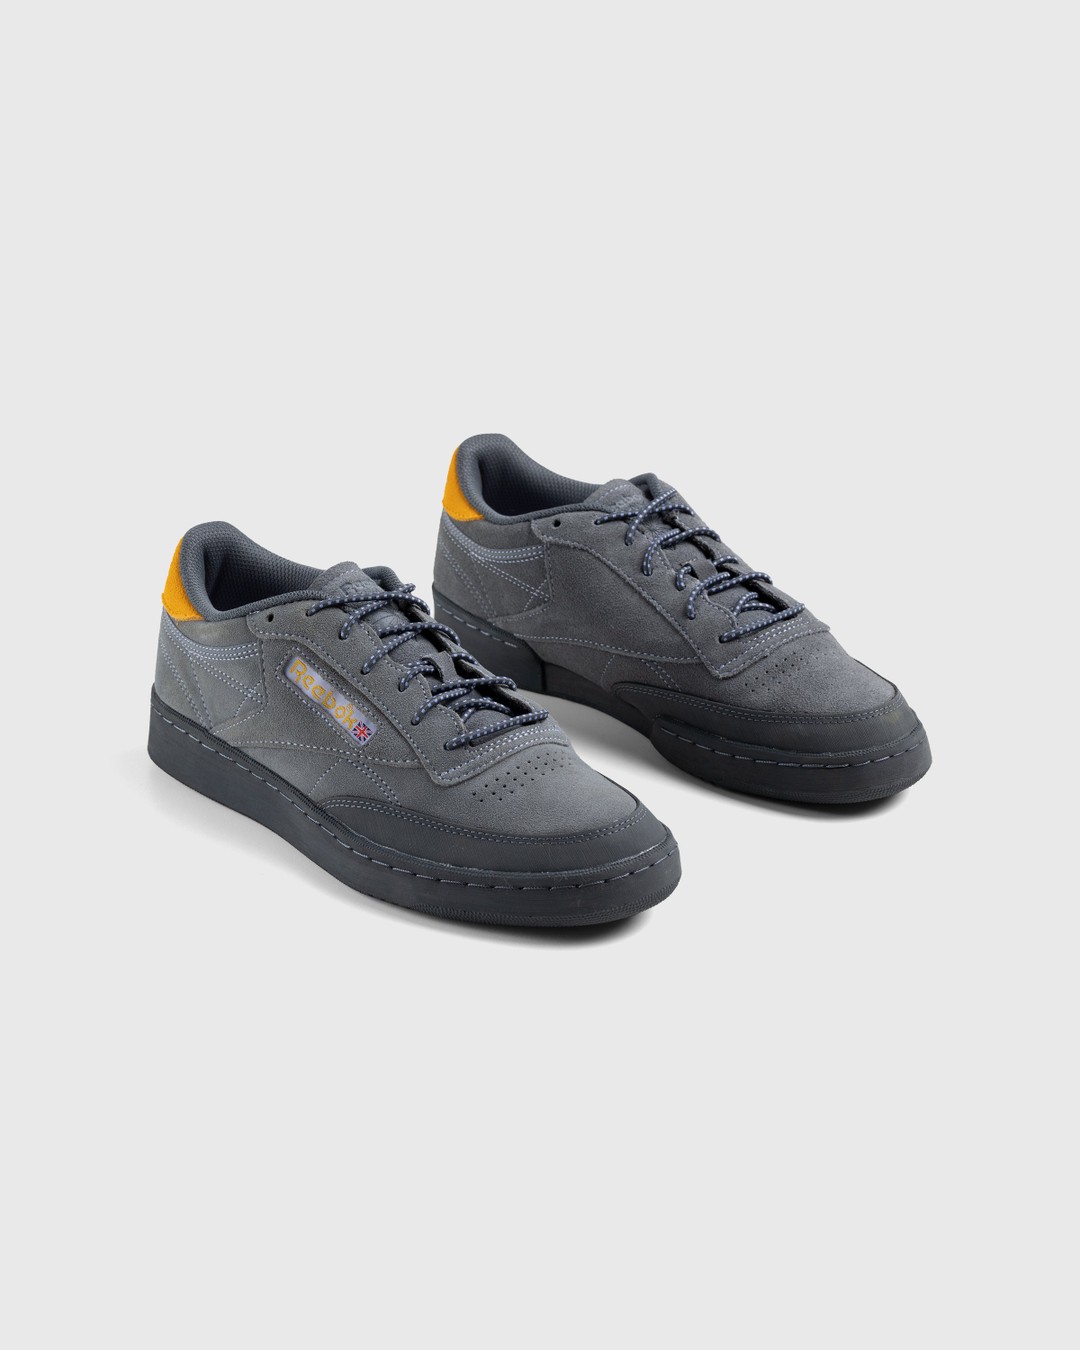 Reebok – Club C 85 Grey - Low Top Sneakers - Grey - Image 3